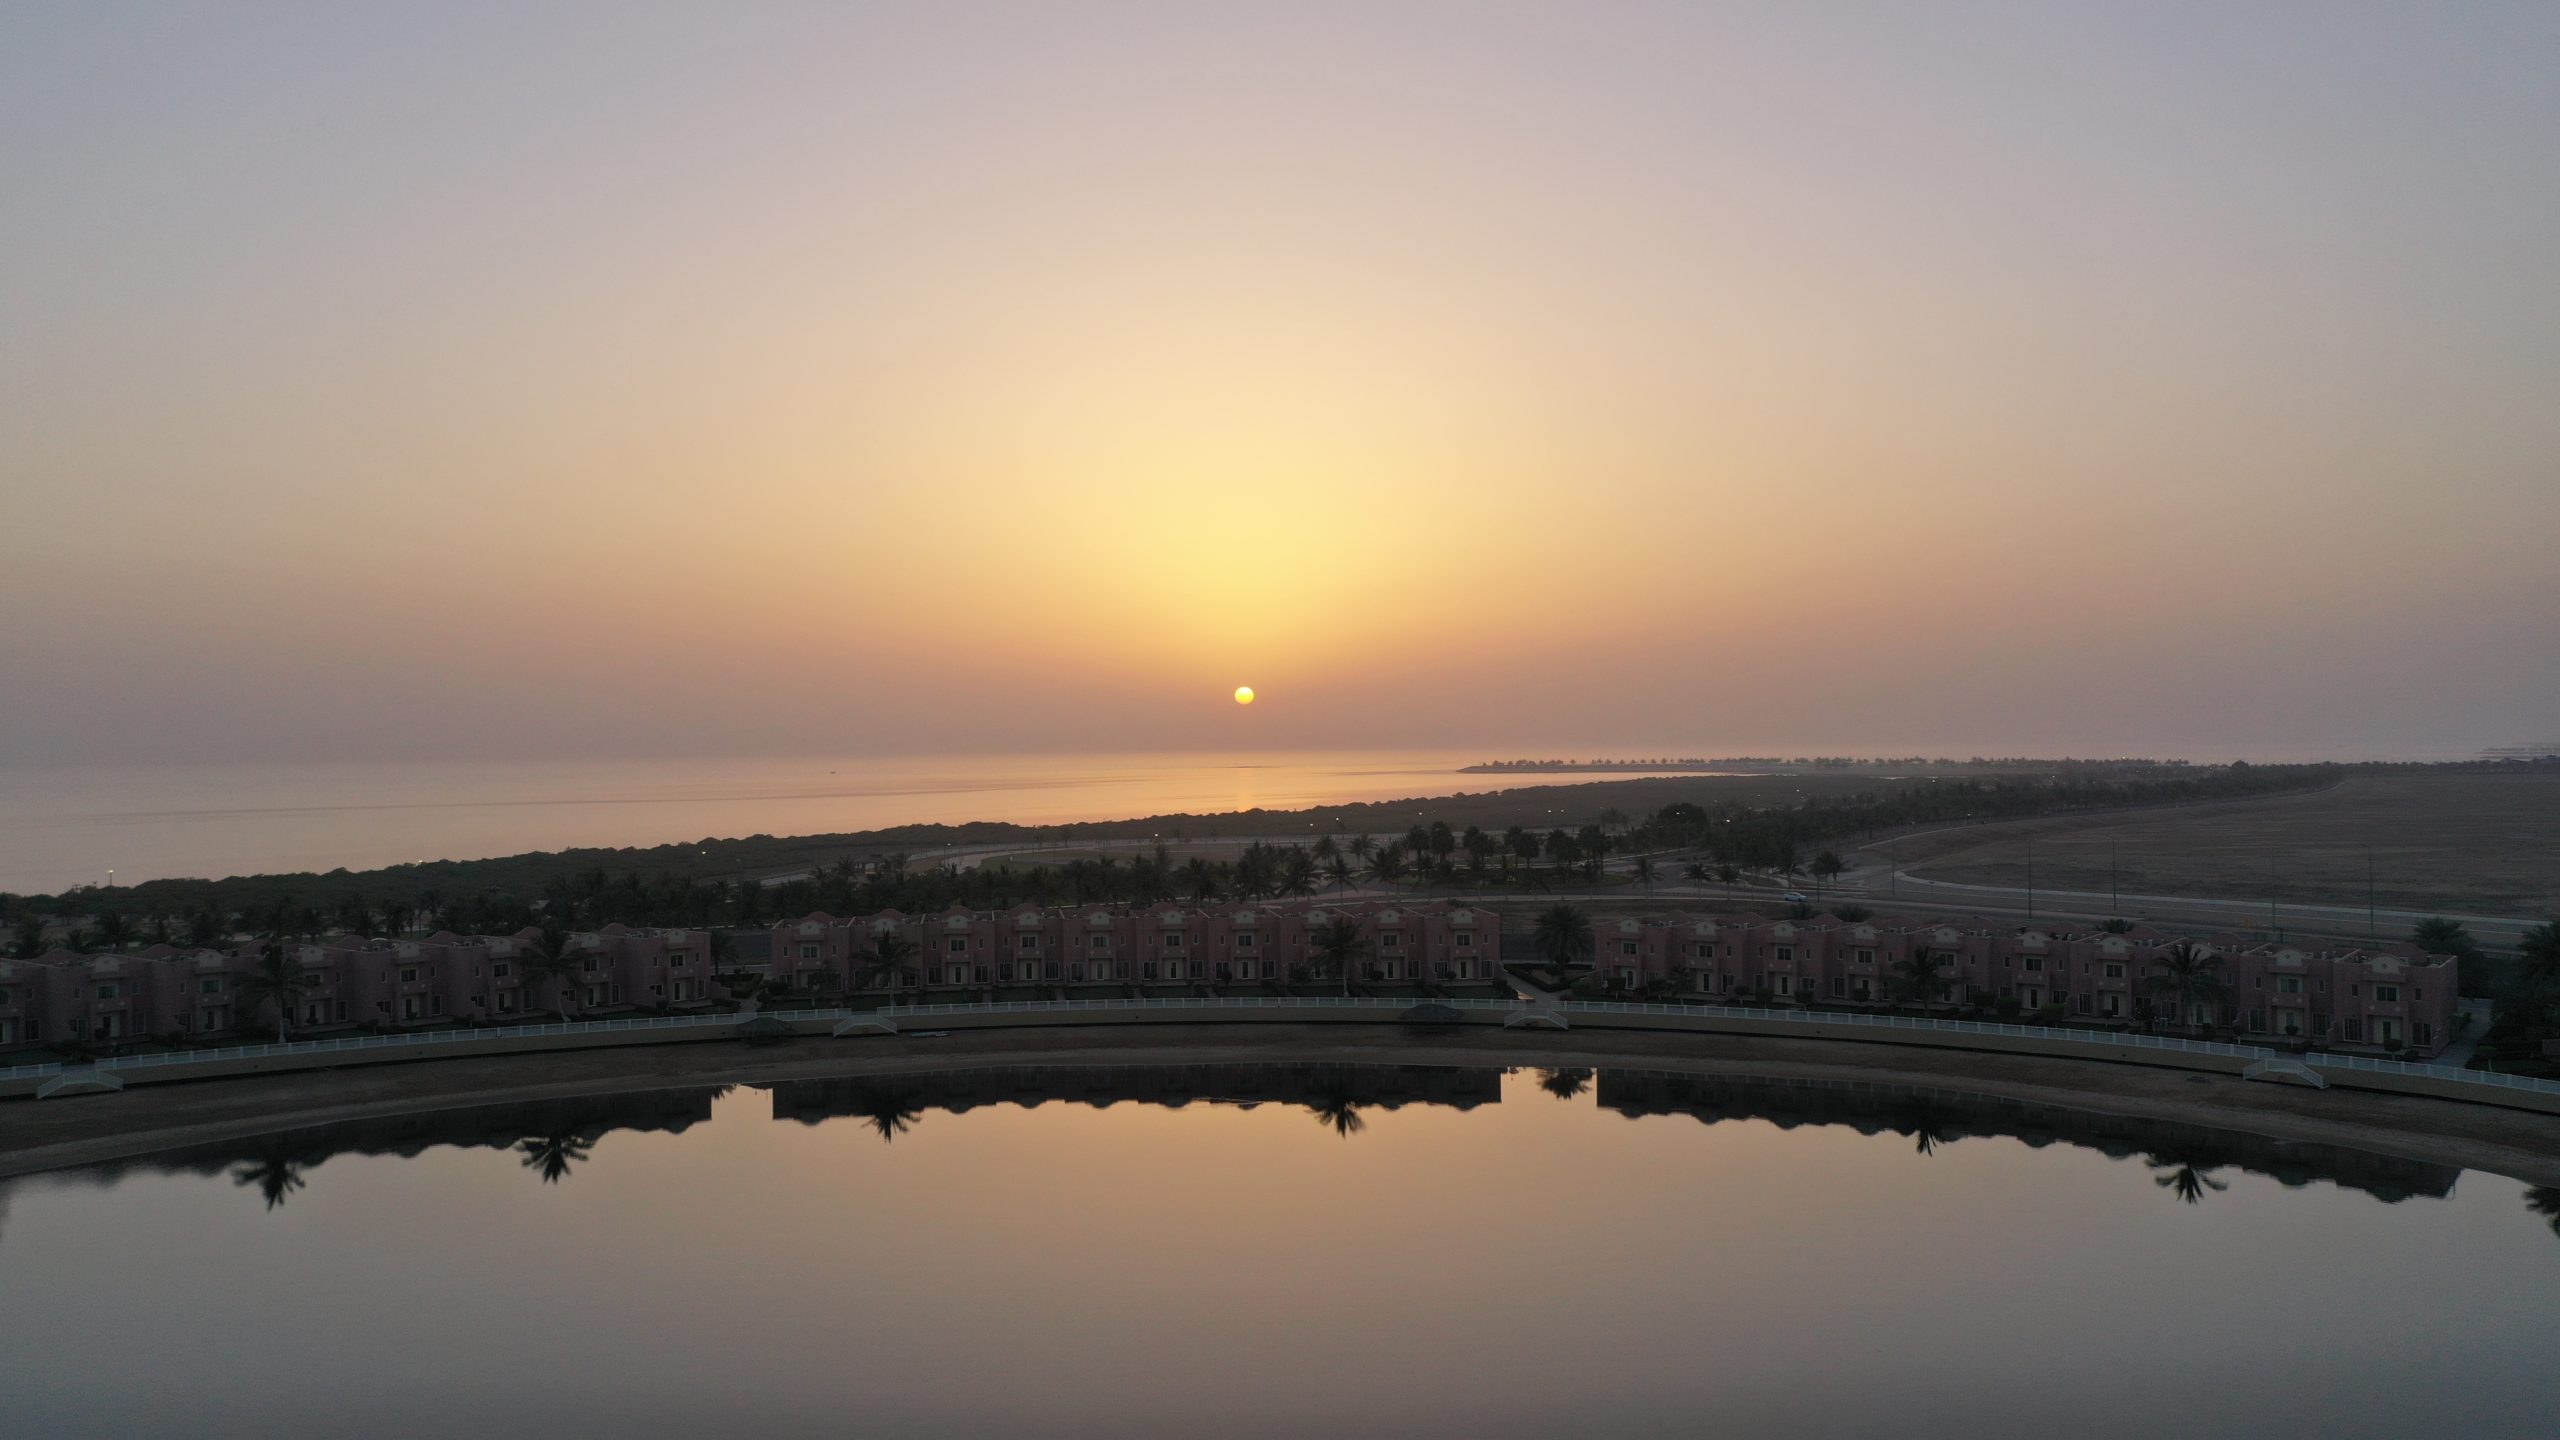 بحر ينبع من تصوير الفوتوغرافي لاحد عملائنا